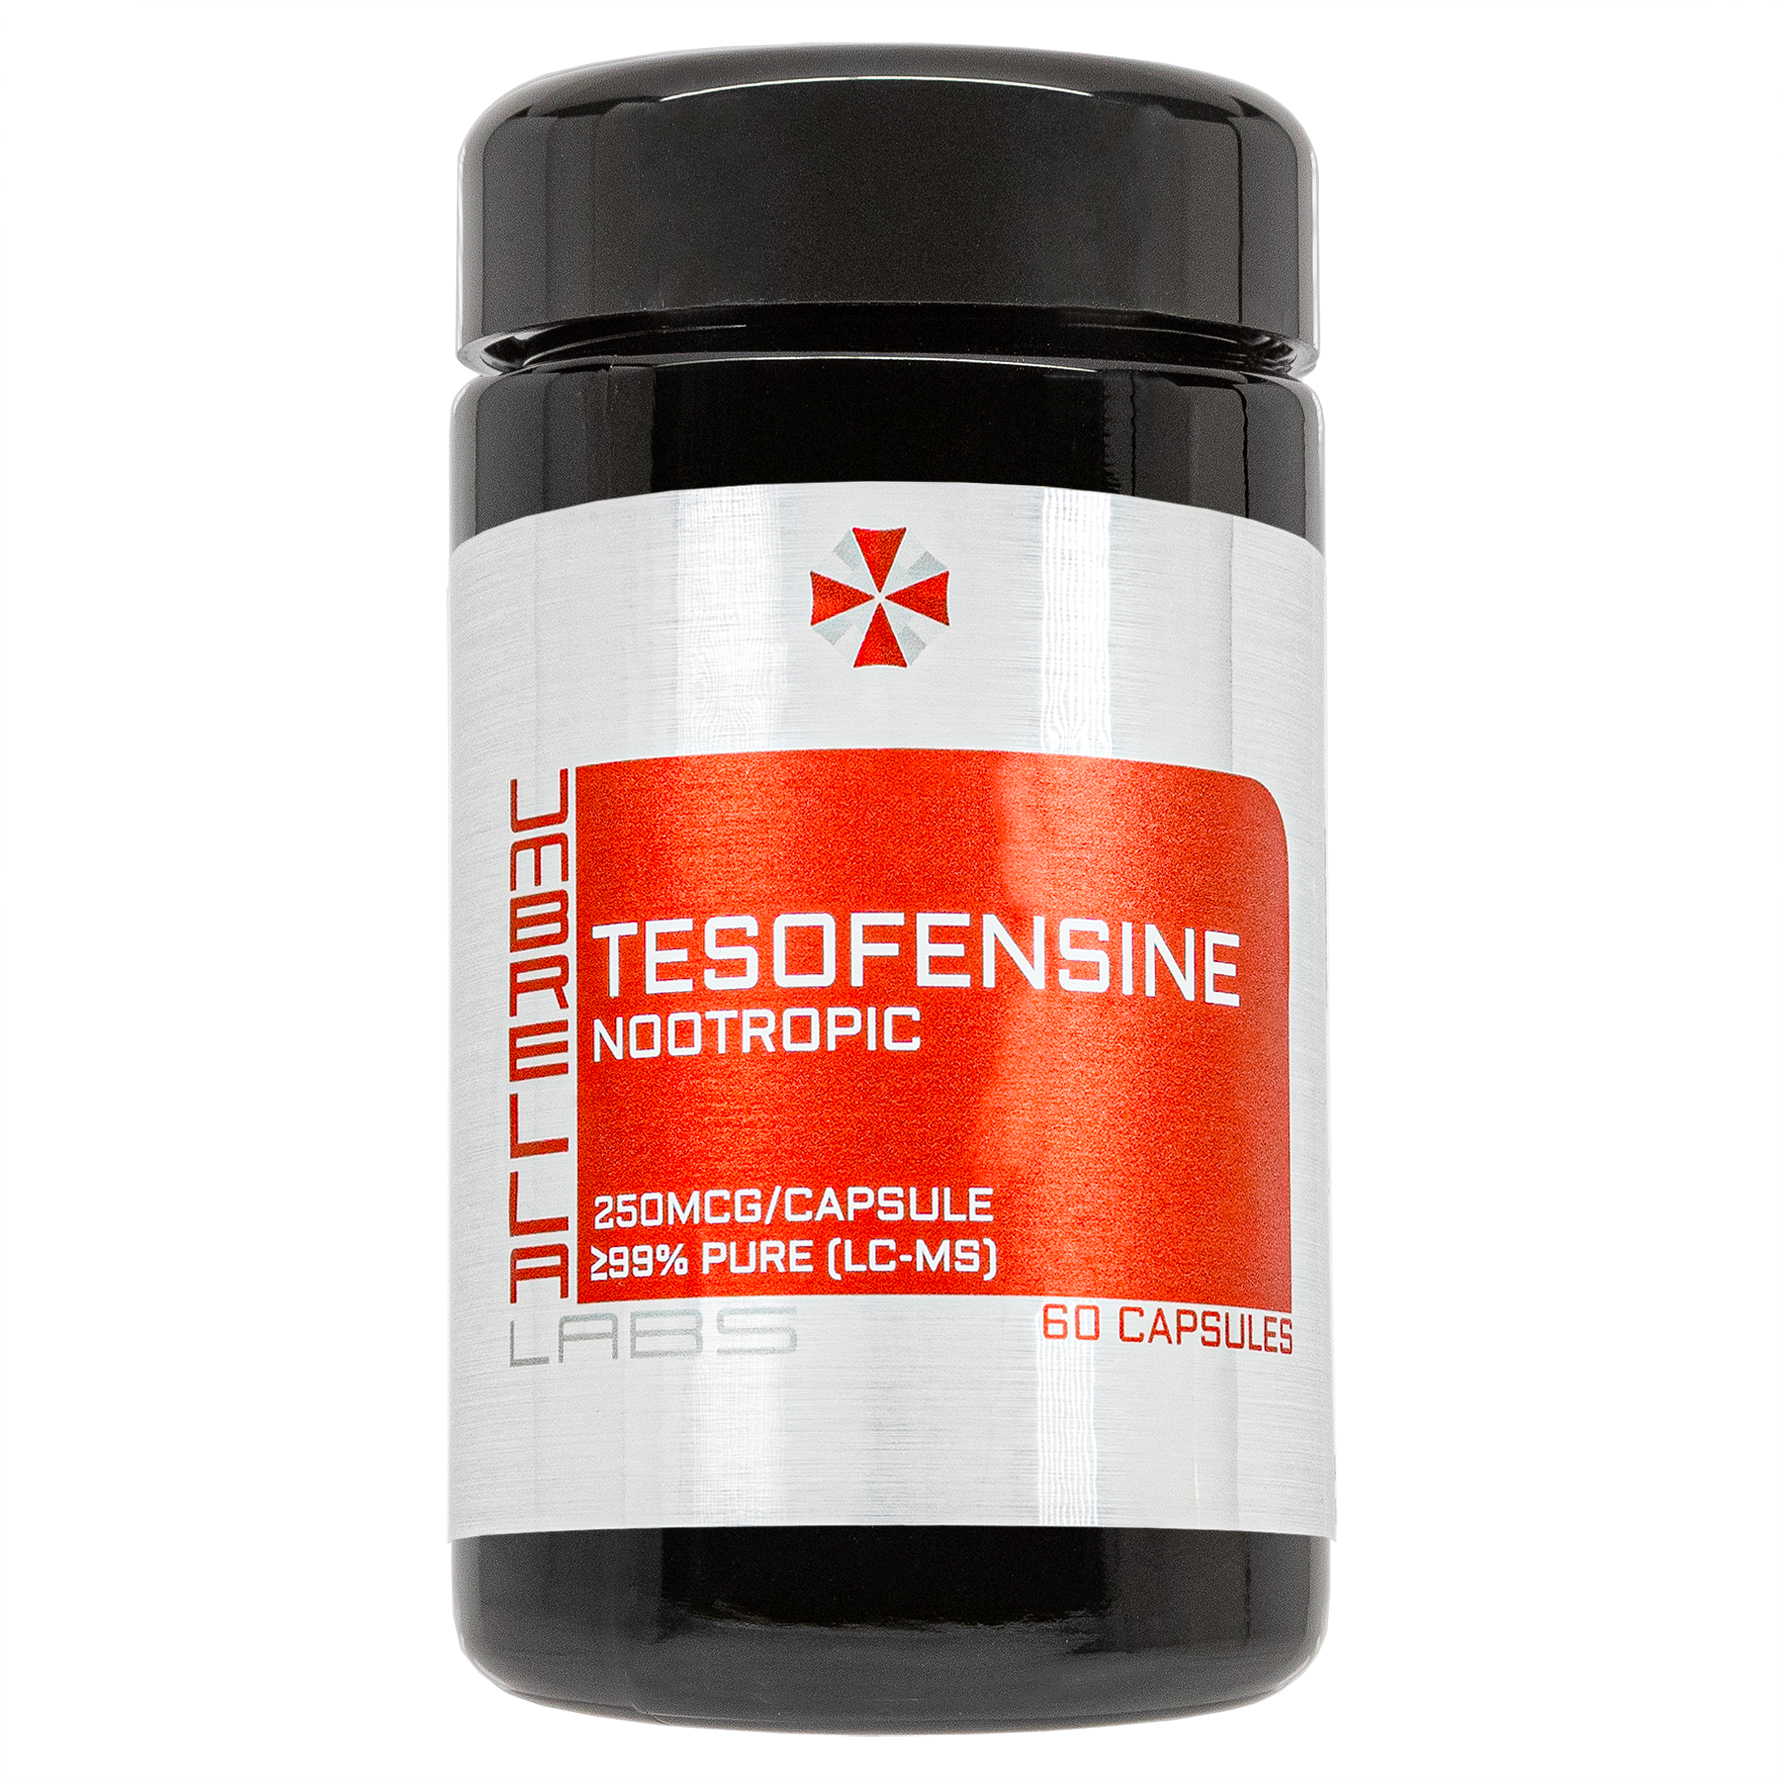 tesofensine powder (60 capsules)